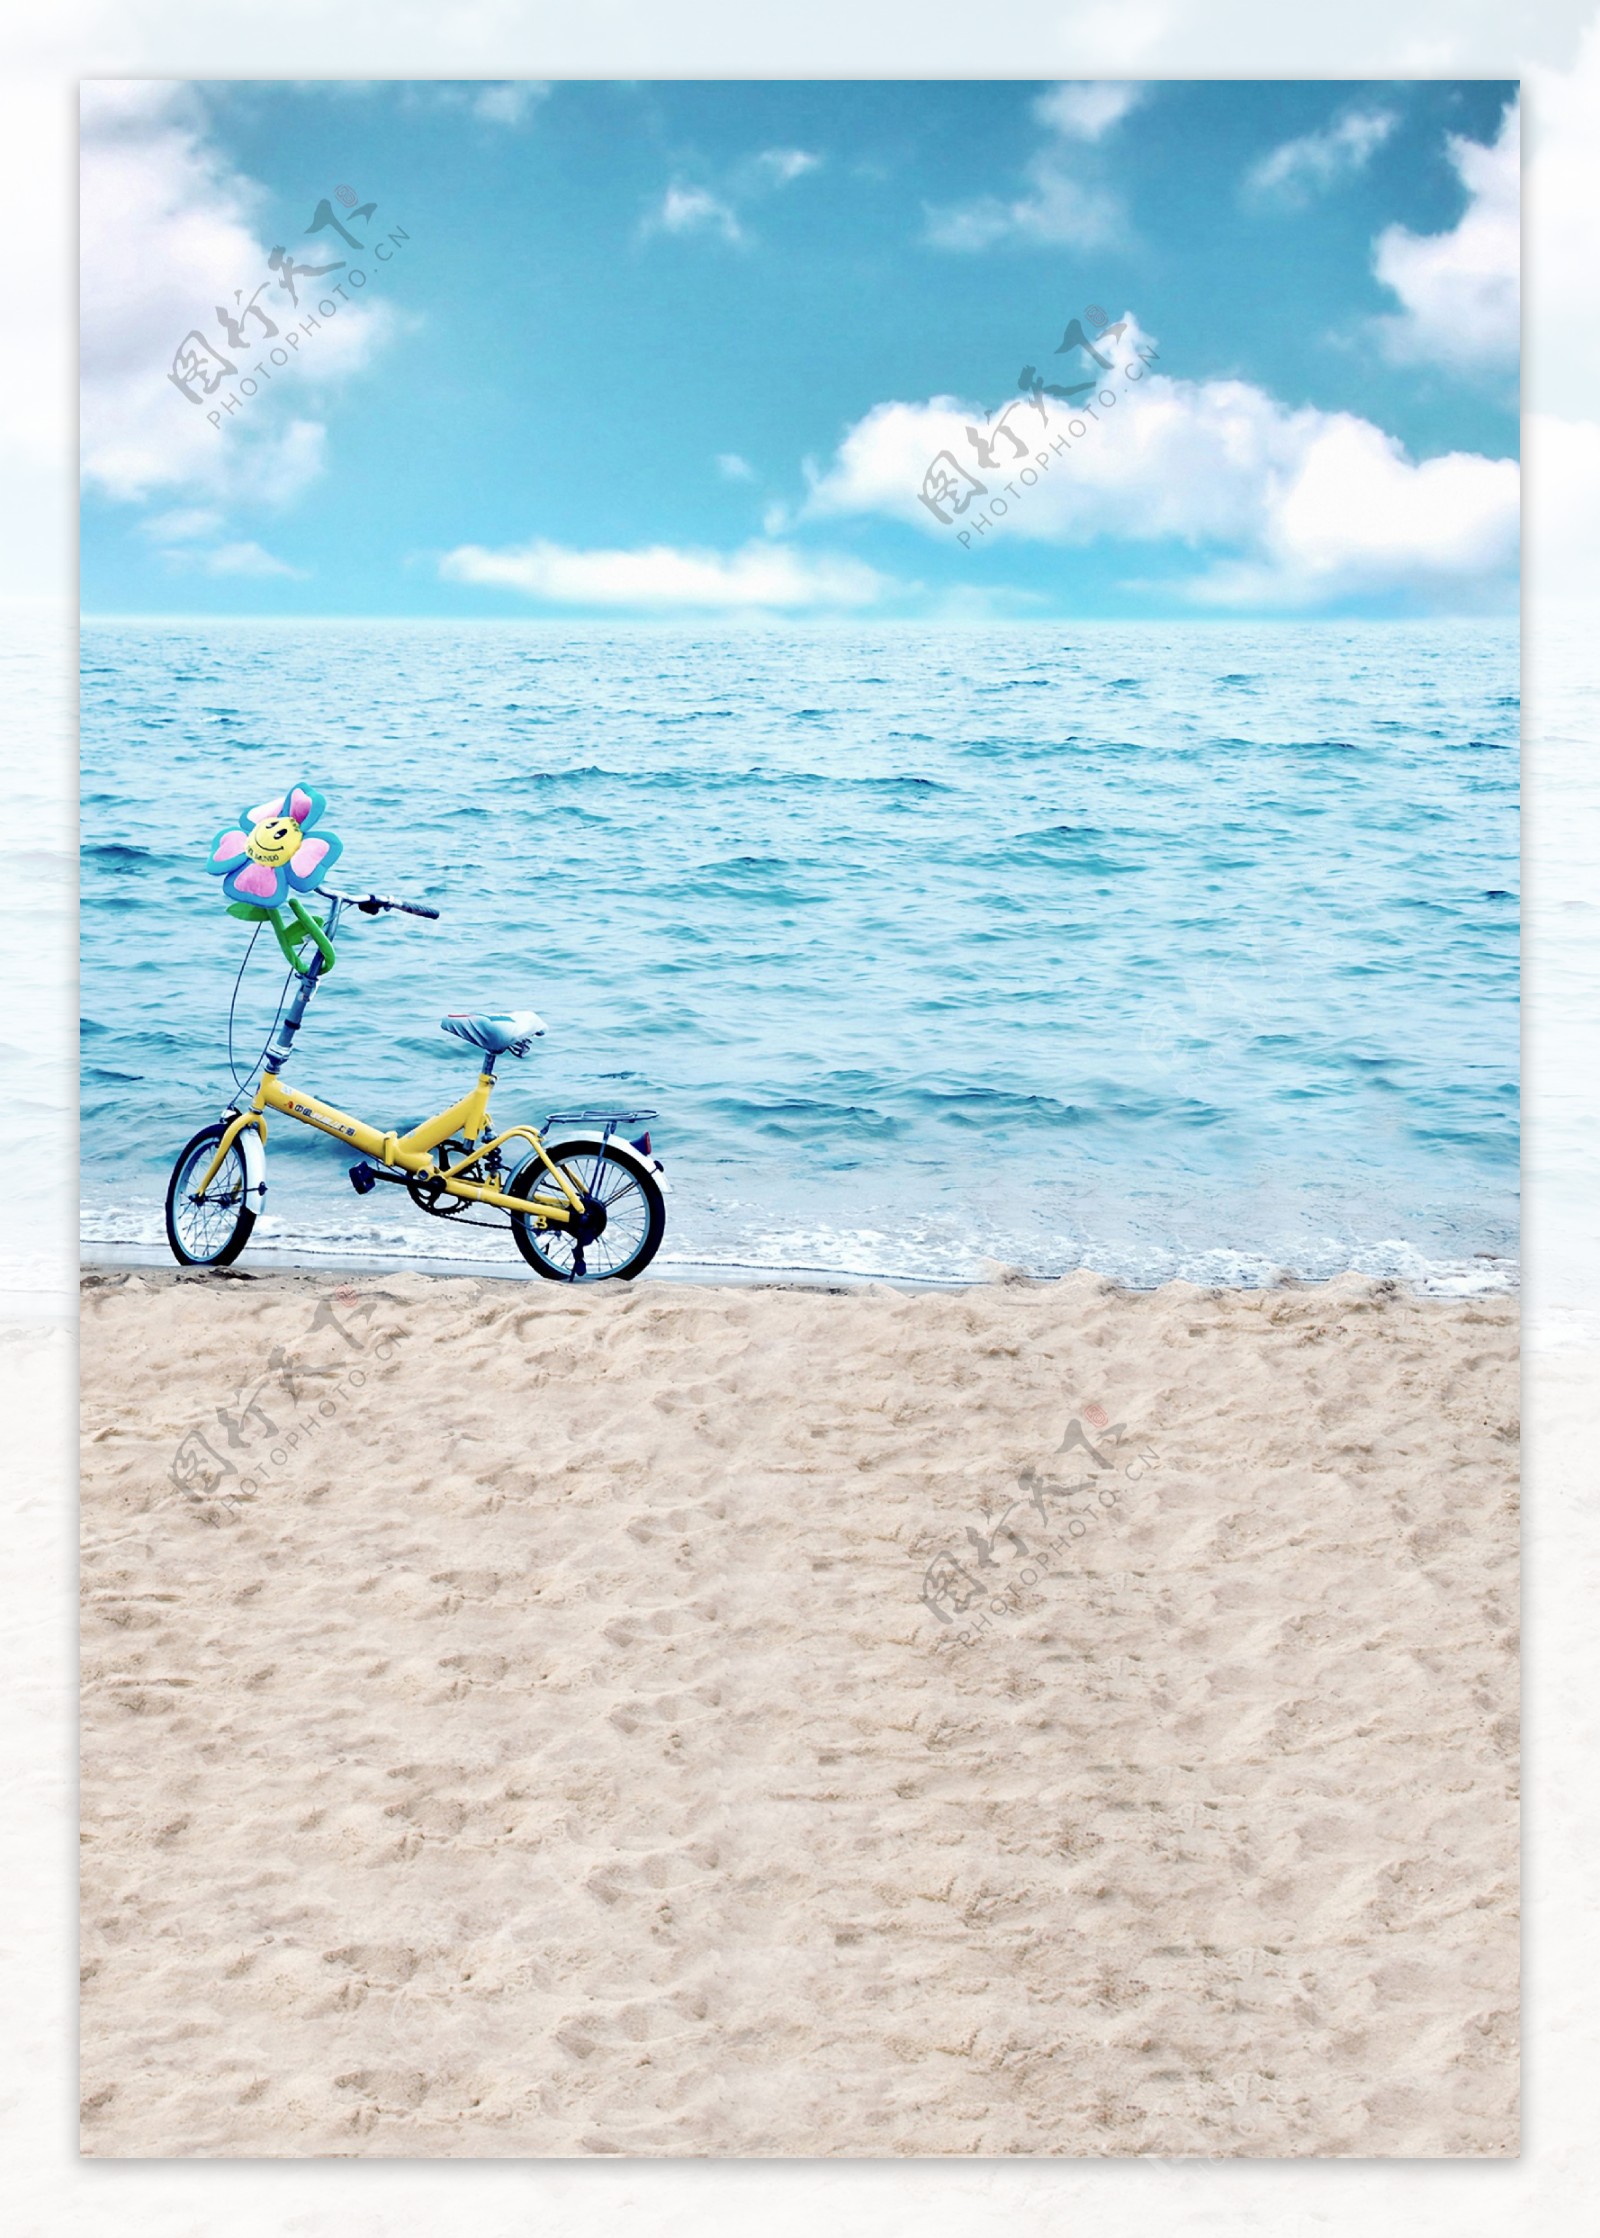 海边沙滩上的单车影楼摄影背景图片